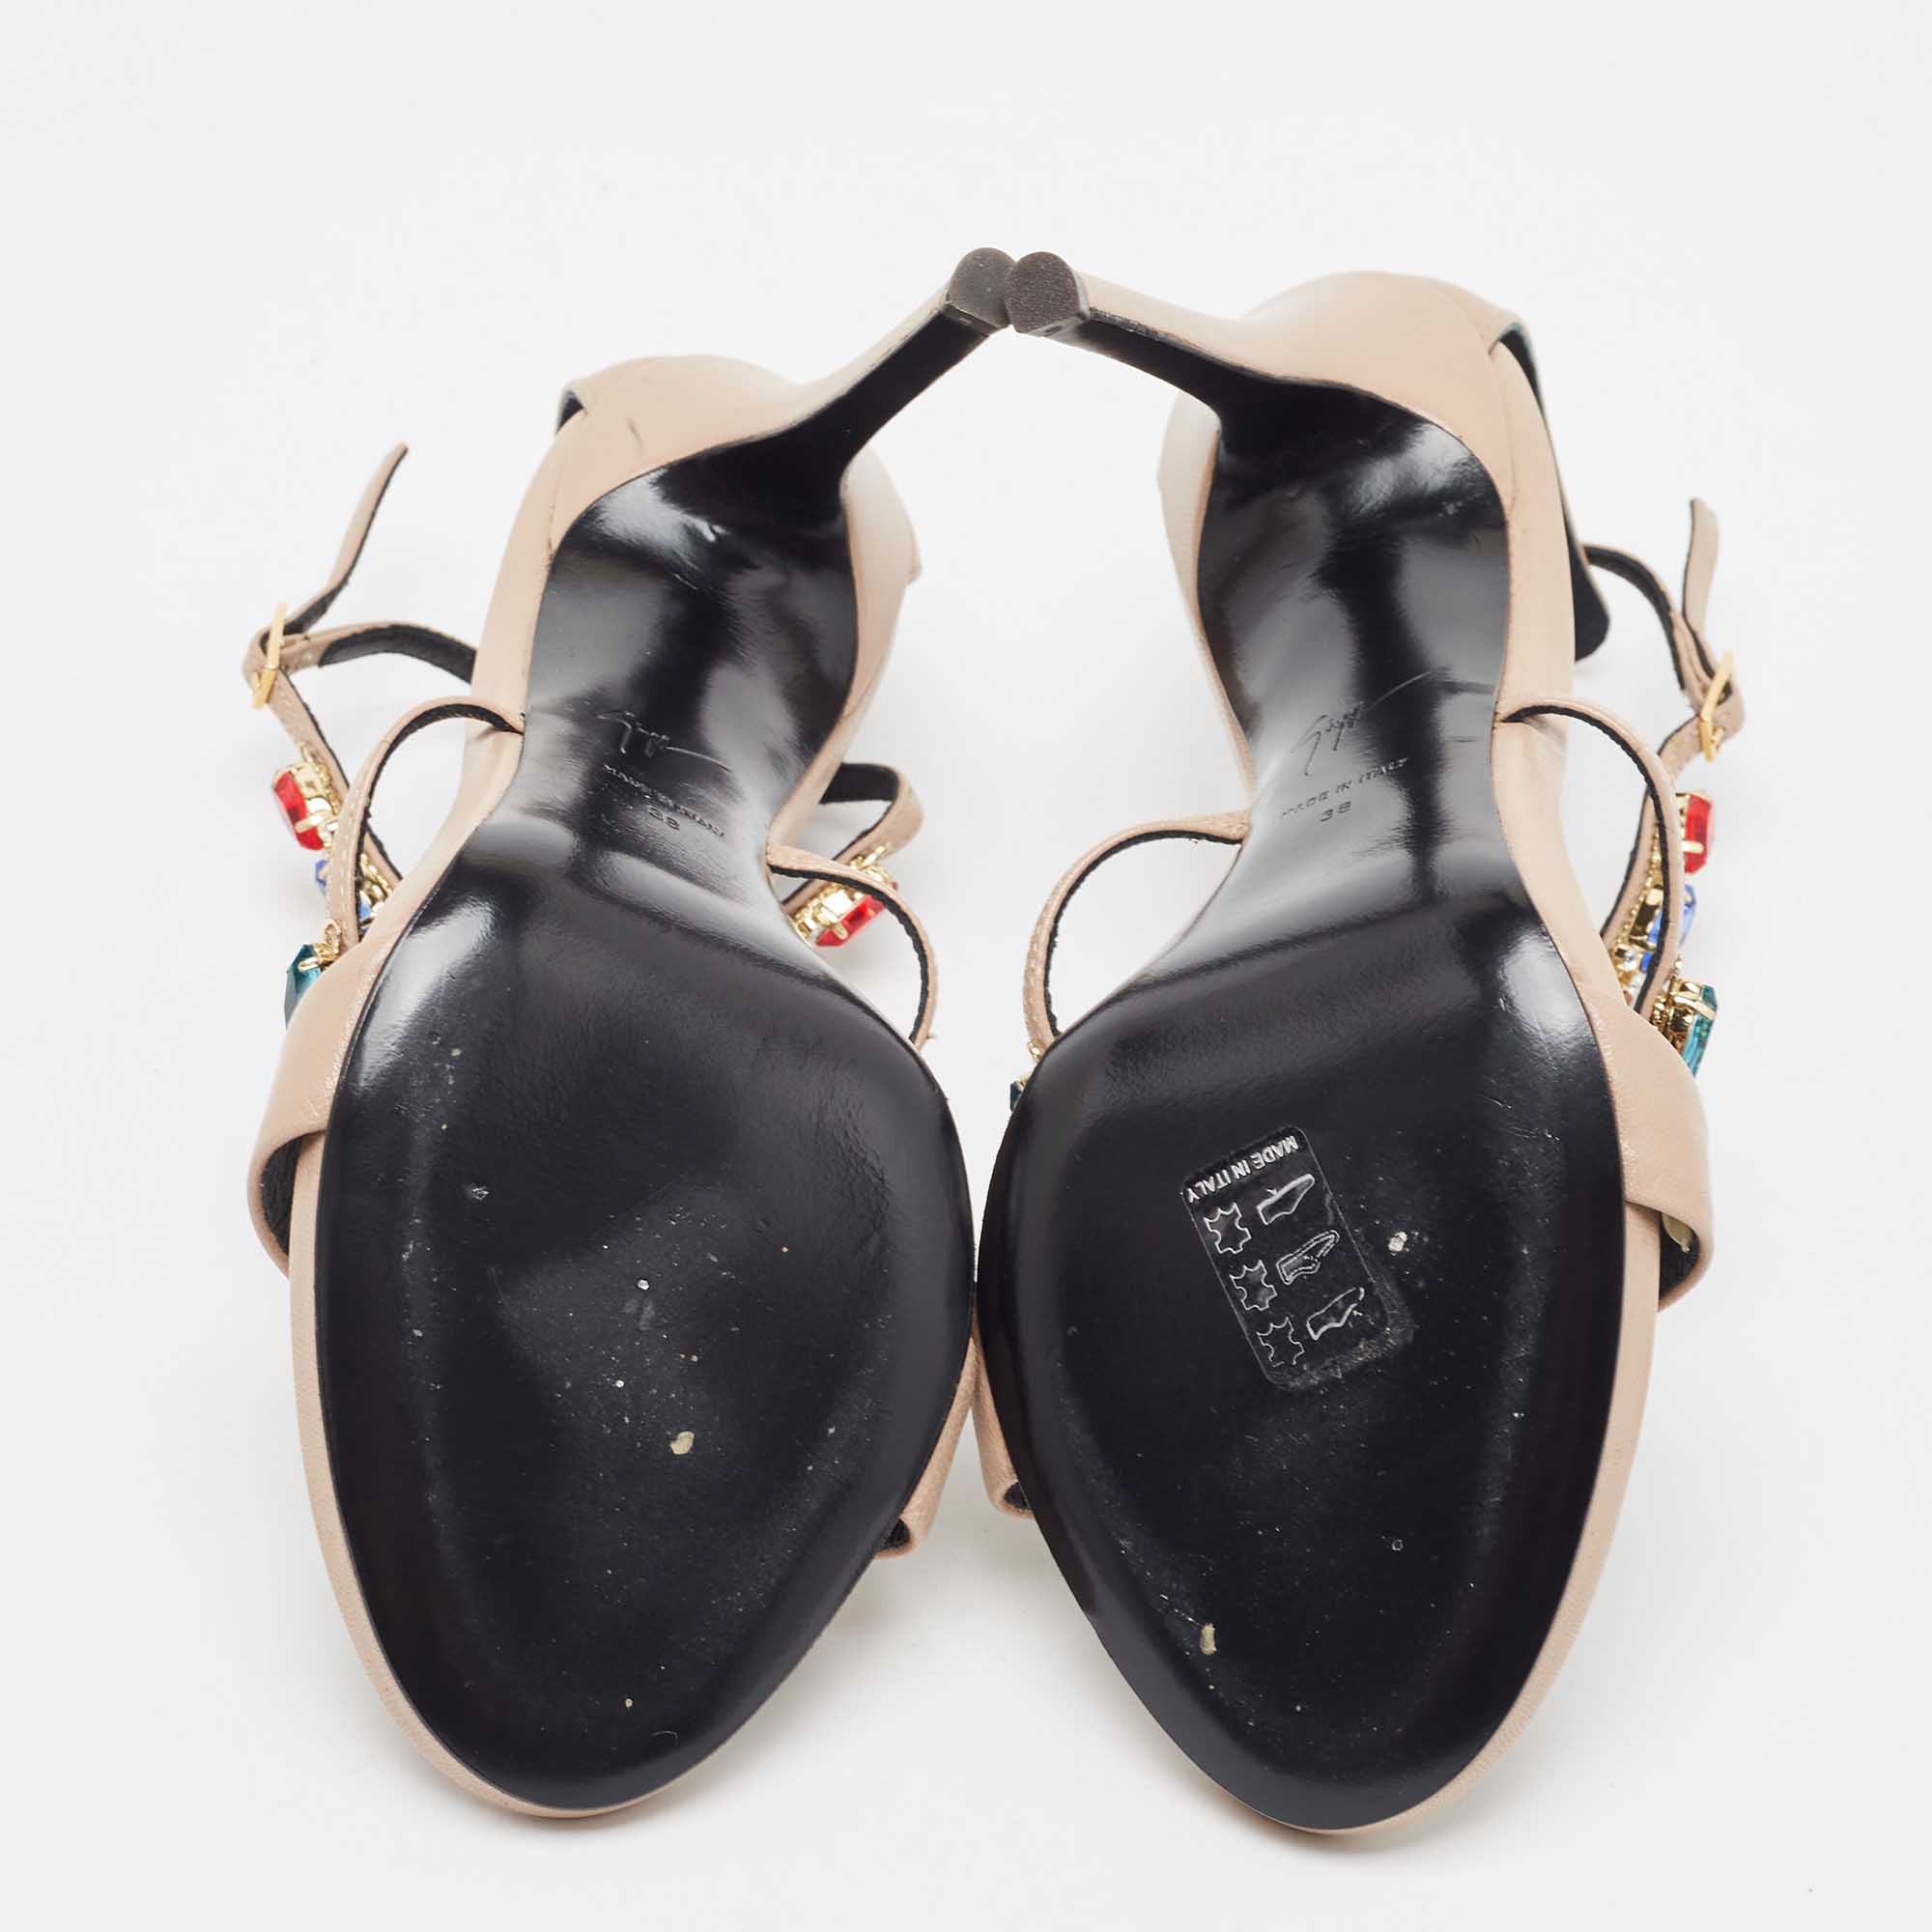 Giuseppe Zanotti Beige Leather Elba Crystal Embellished Sandals Size 38